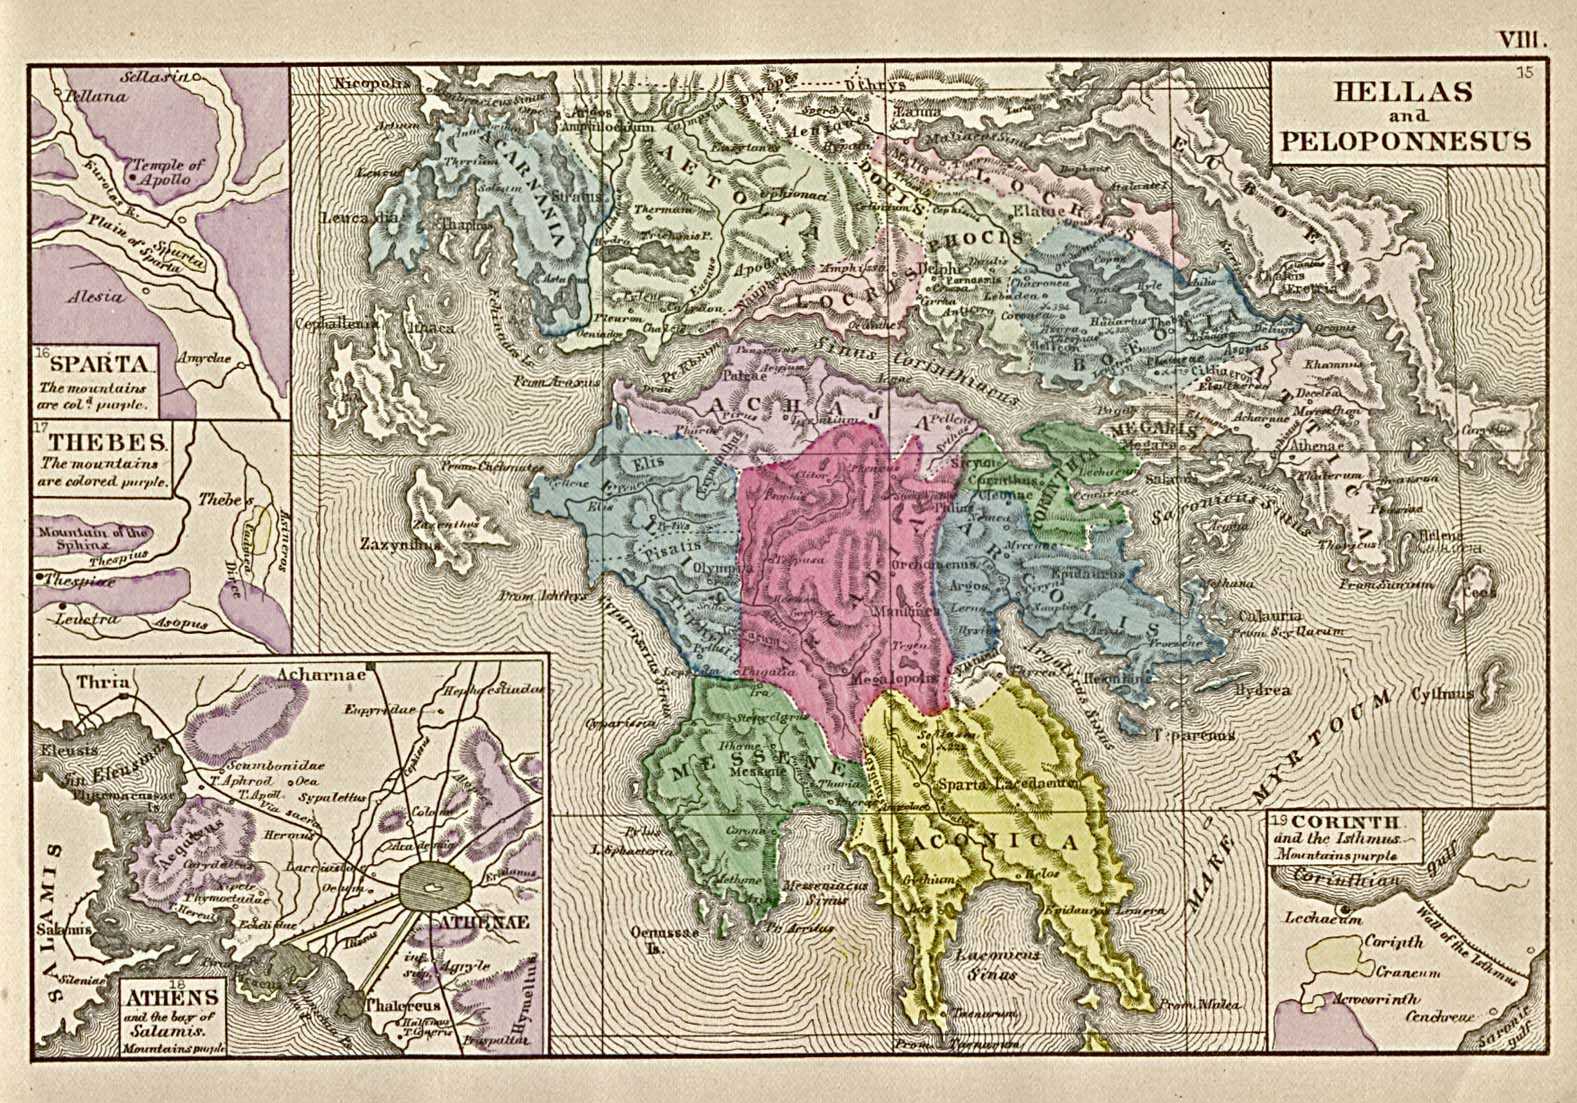 350 BC Hellas